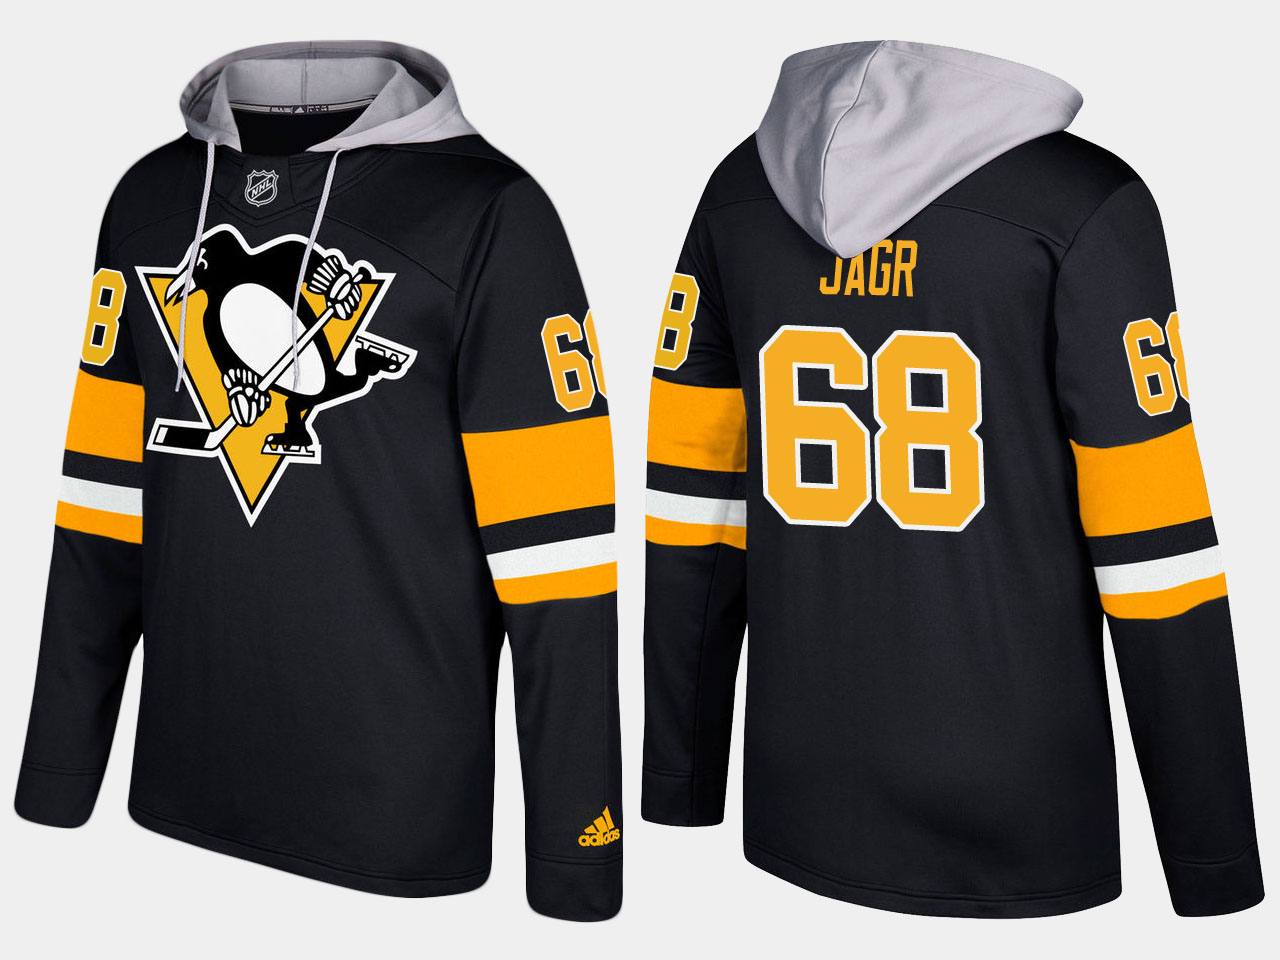 Men NHL Pittsburgh penguins retired #68 jaromir jagr black hoodie->pittsburgh penguins->NHL Jersey